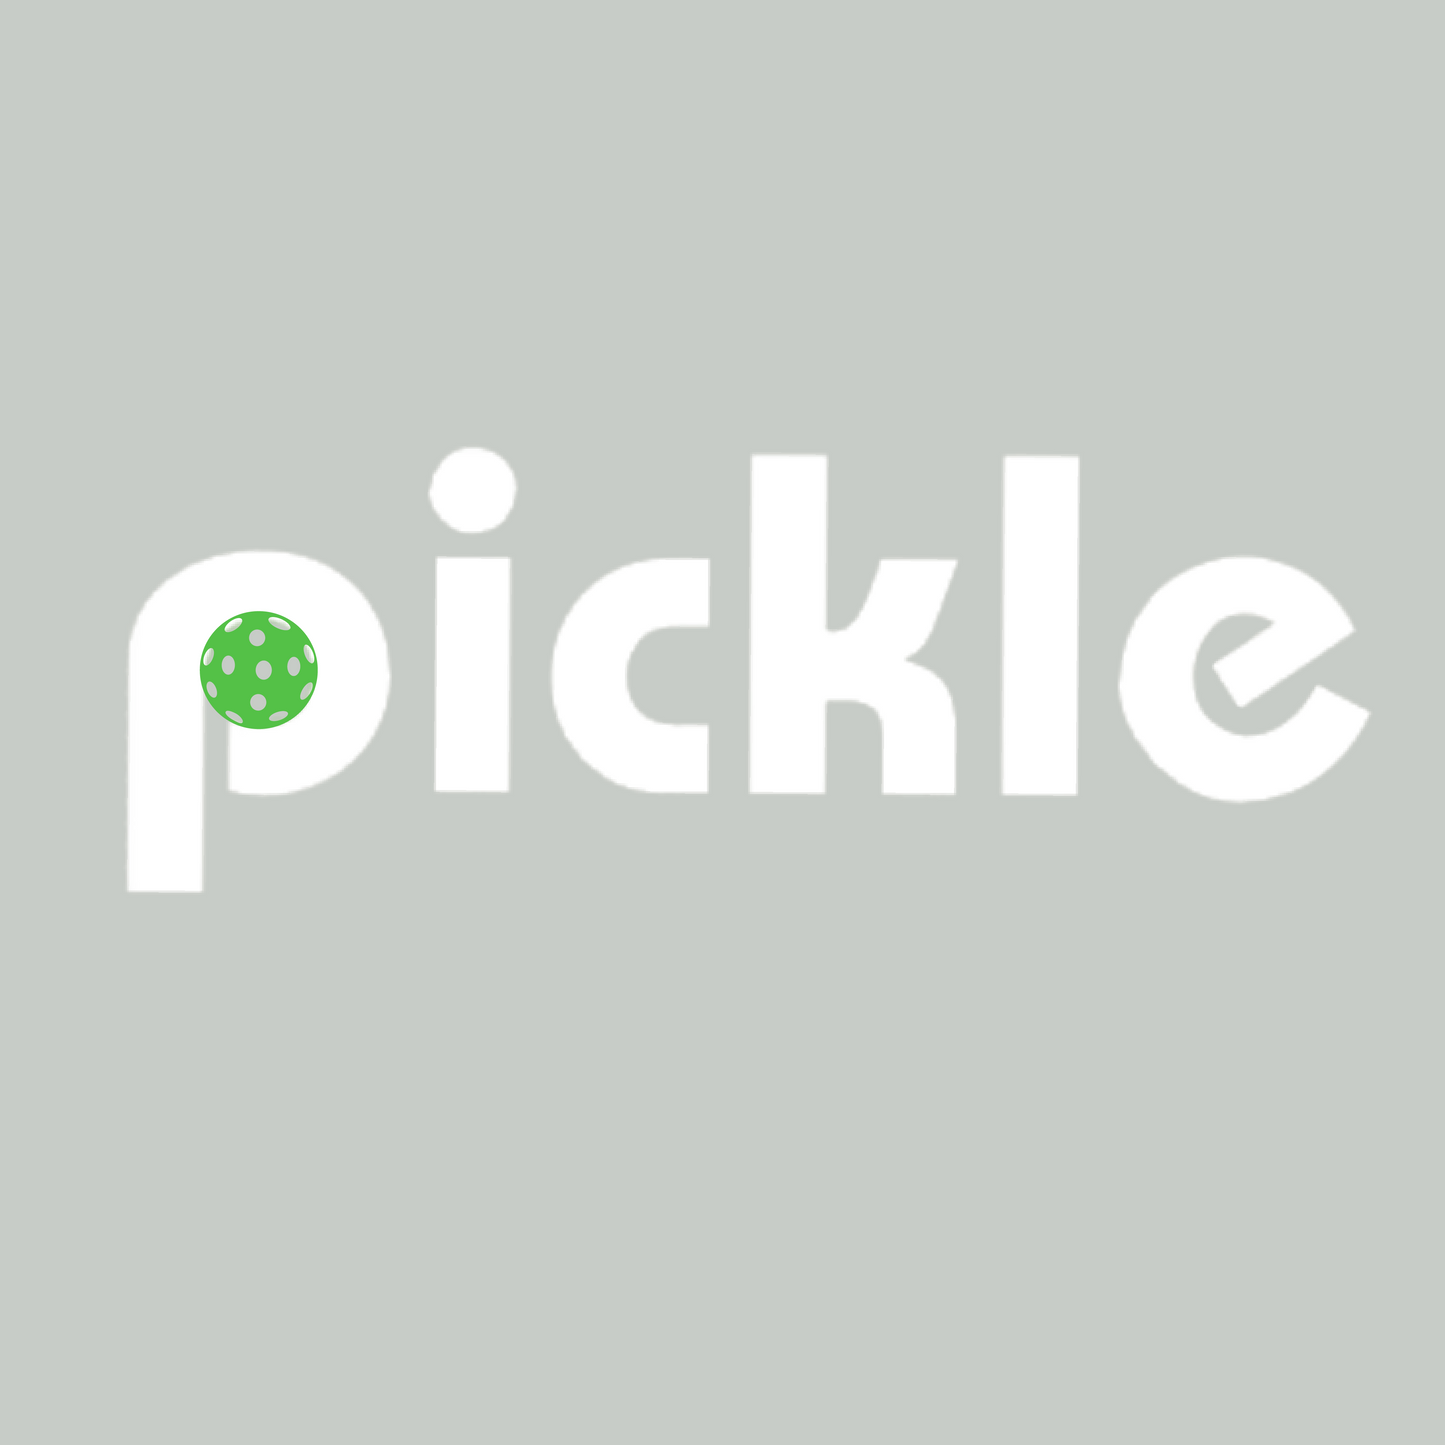 Pickle (Customizable) | Women's Rocker Pickleball Tanks | 50/25/25 Poly/Cotton/Rayon